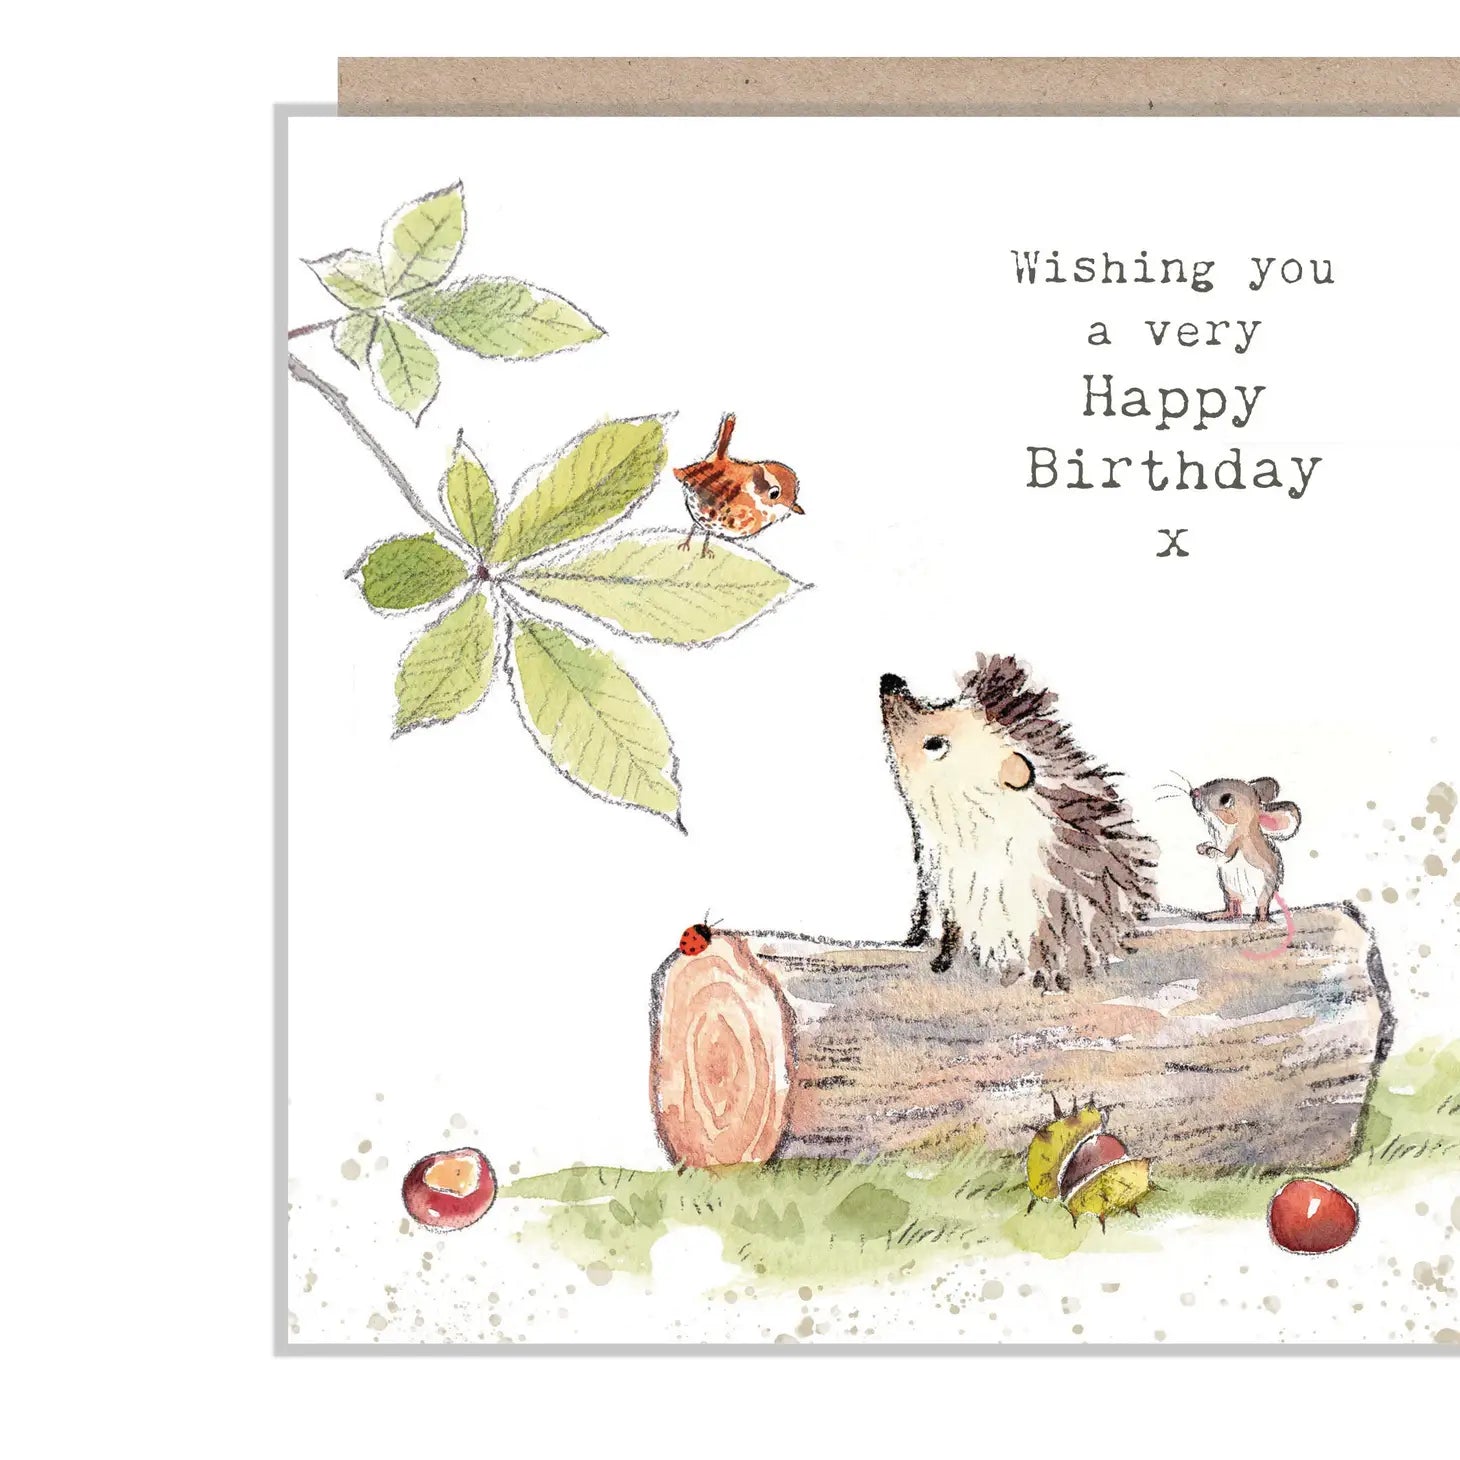 Cute Hedgehog Card - Wishing You A Very Happy Birthday